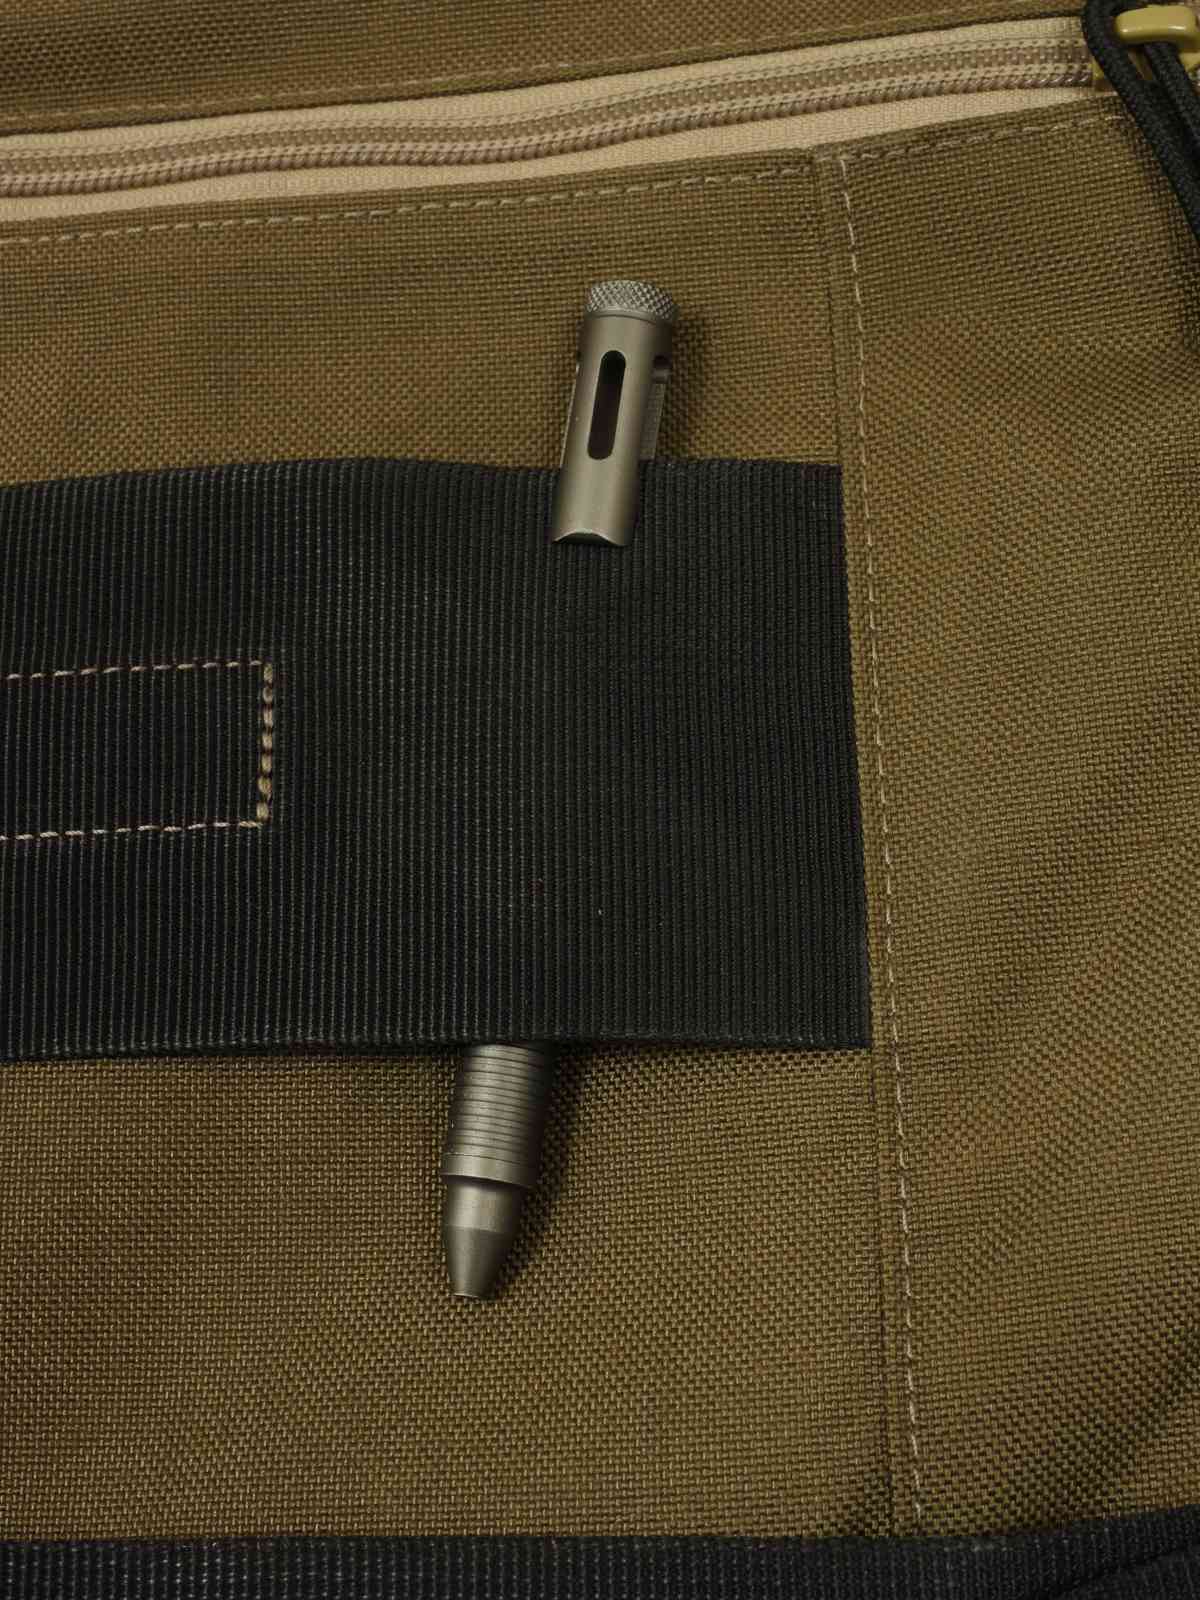 Böker Plus Tactical Pen CID cal.45 - Anklippen nur bedingt möglich